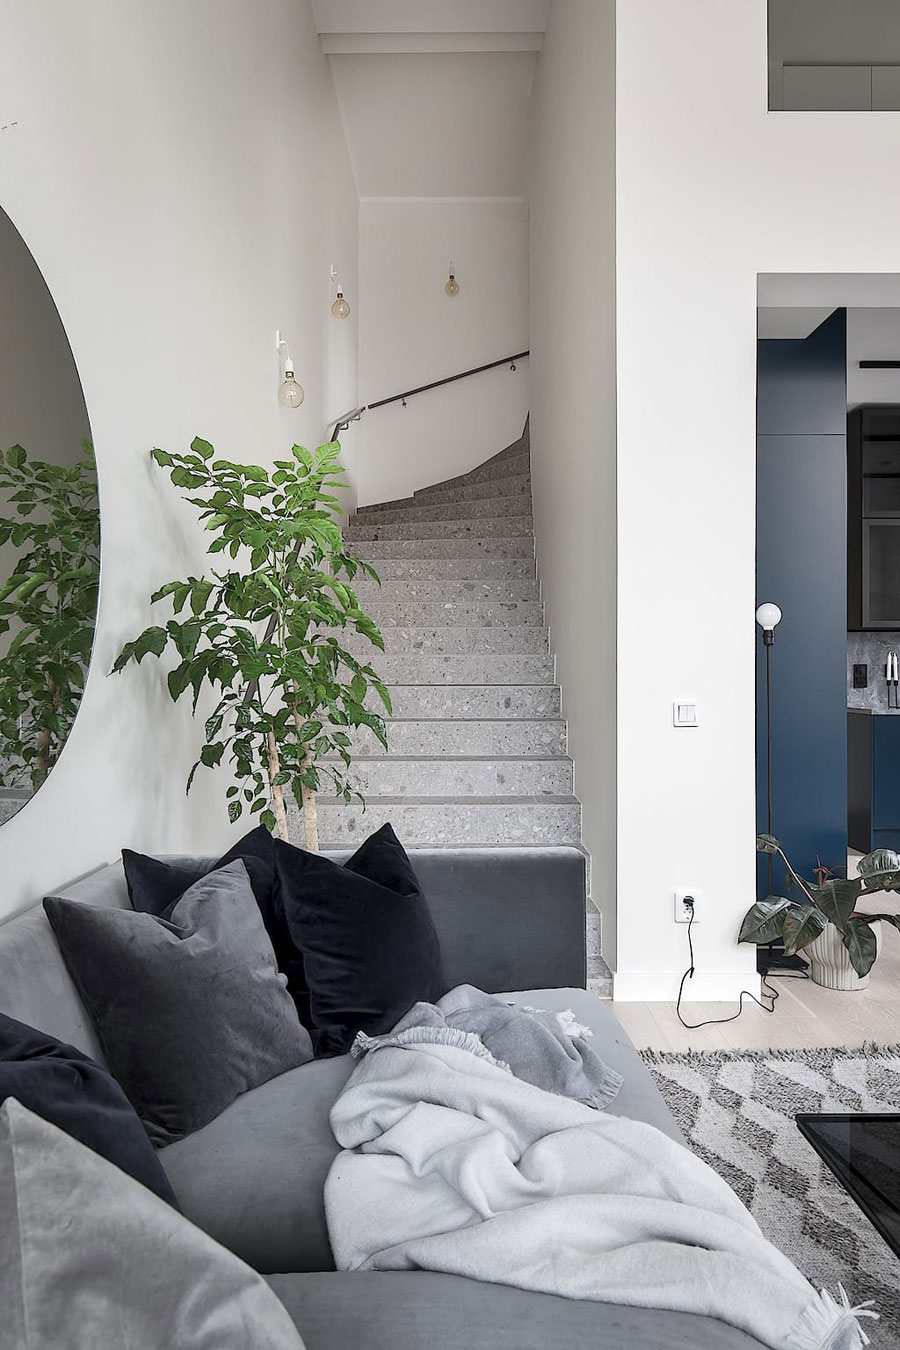 In dit mooie appartement is er gekozen voor een PVC trapbekleding met een terrazzo look, die super mooi staat bij de houten vloer en de strakke witte wanden.